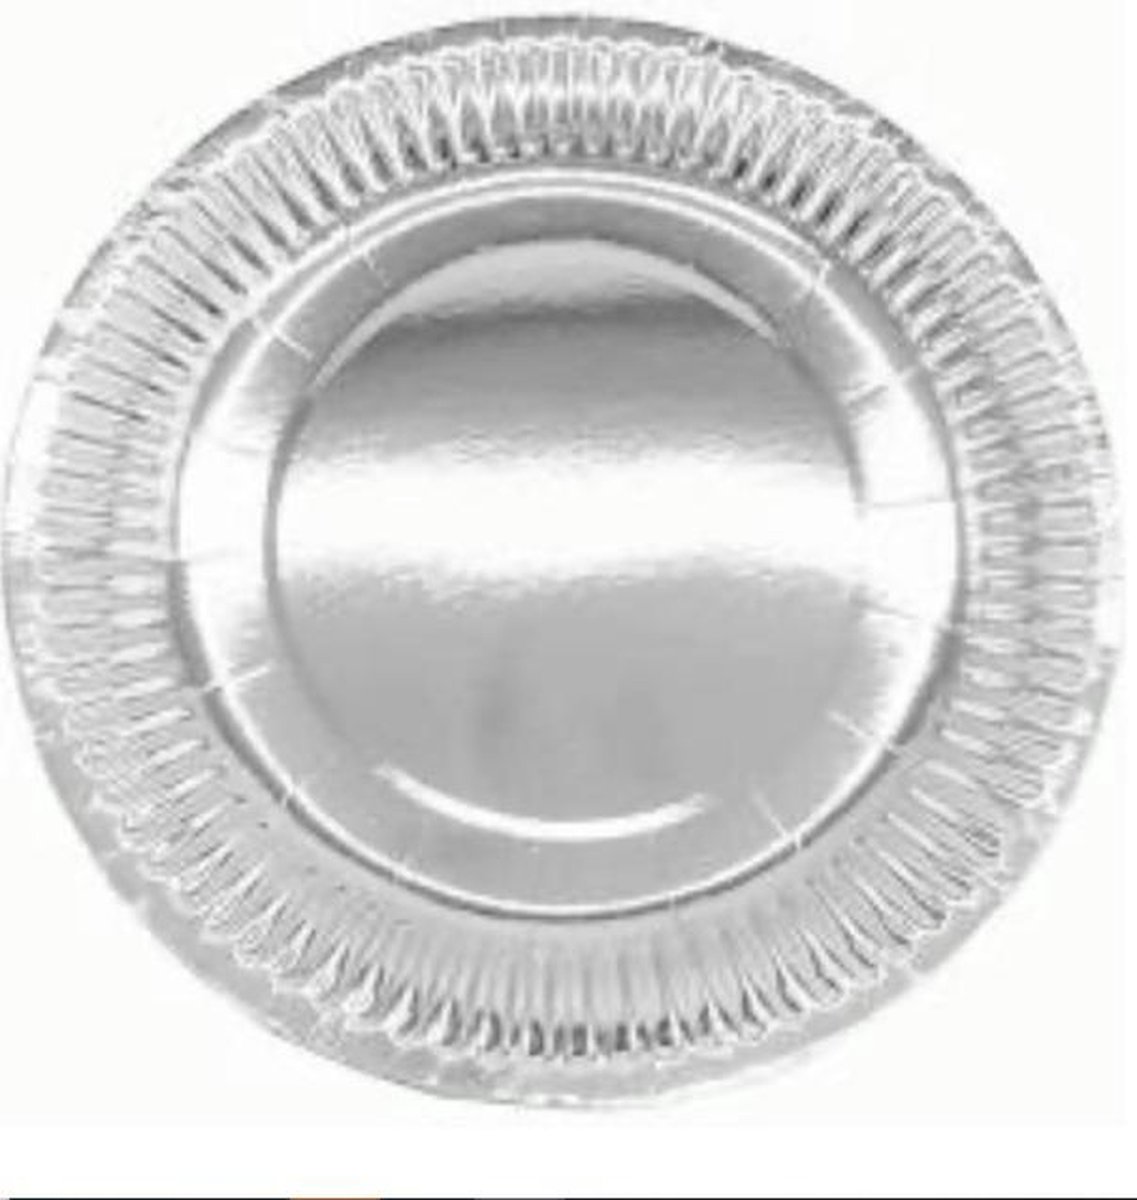 Kartonnen Bordjes zilver 18 cm 20 st - Wegwerp borden - Feest/verjaardag/BBQ borden / Gebak bordjes maat